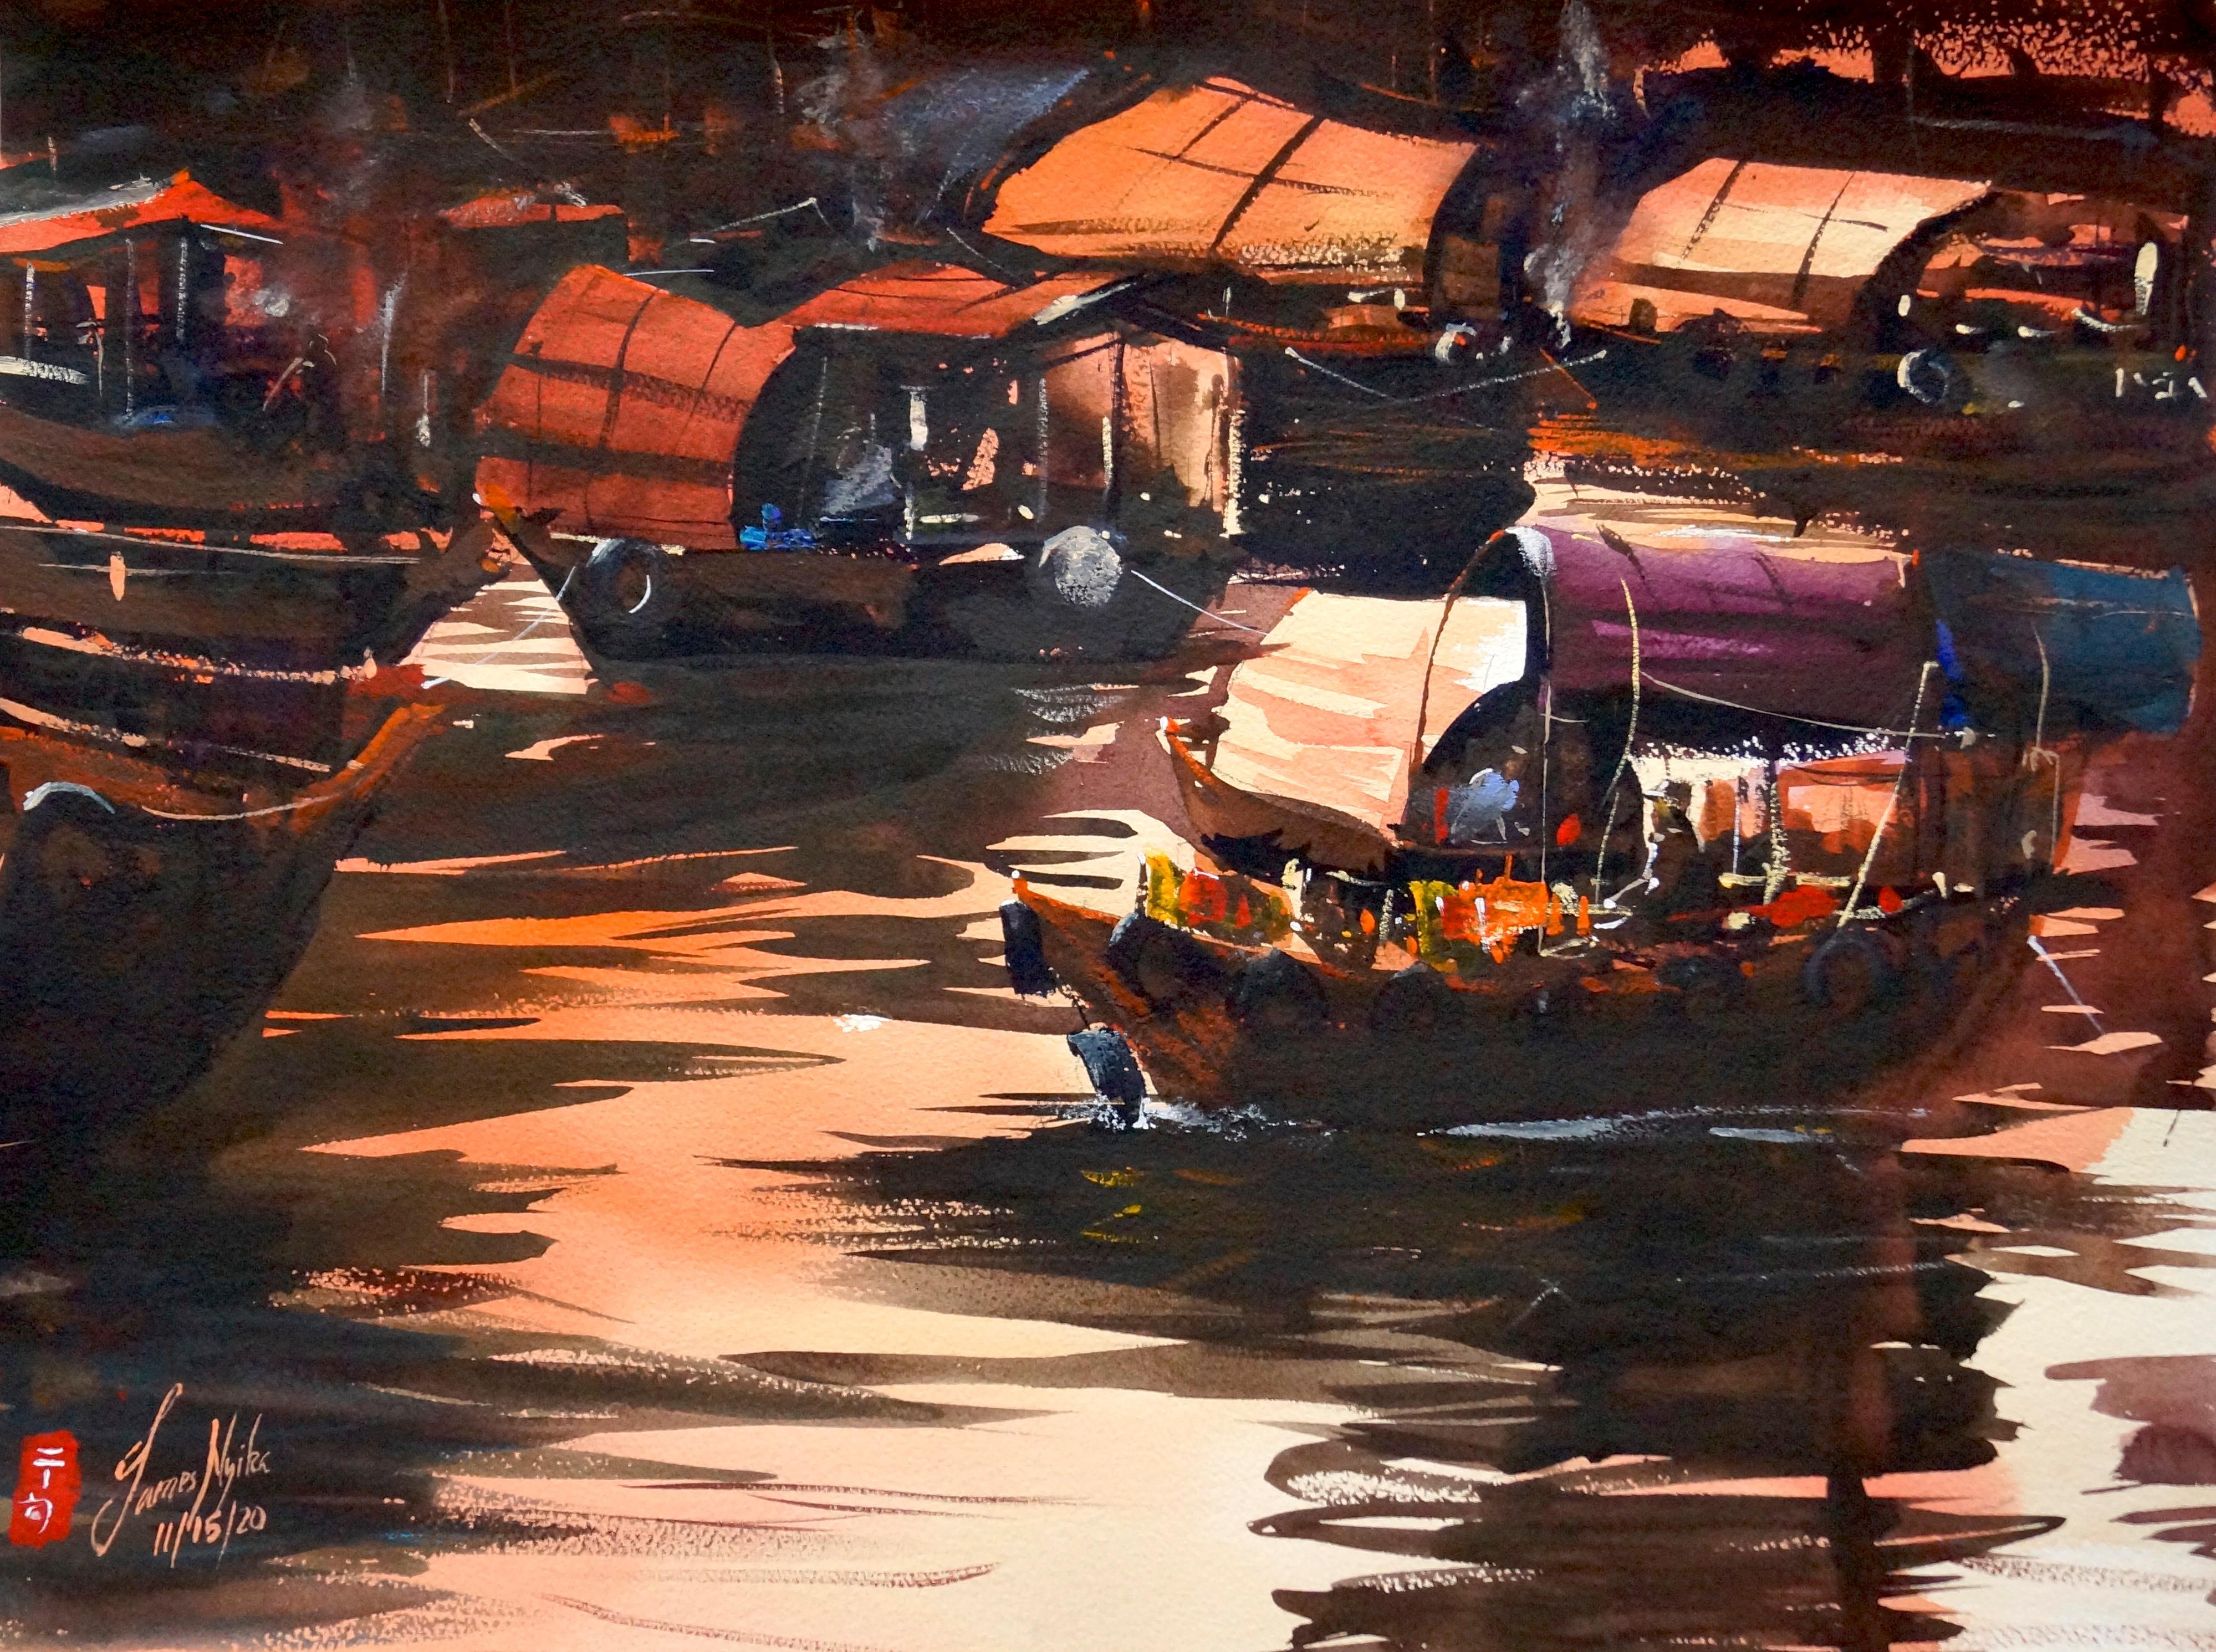 Hong Kong - The Boat Trader, Original Painting - Art by James Nyika